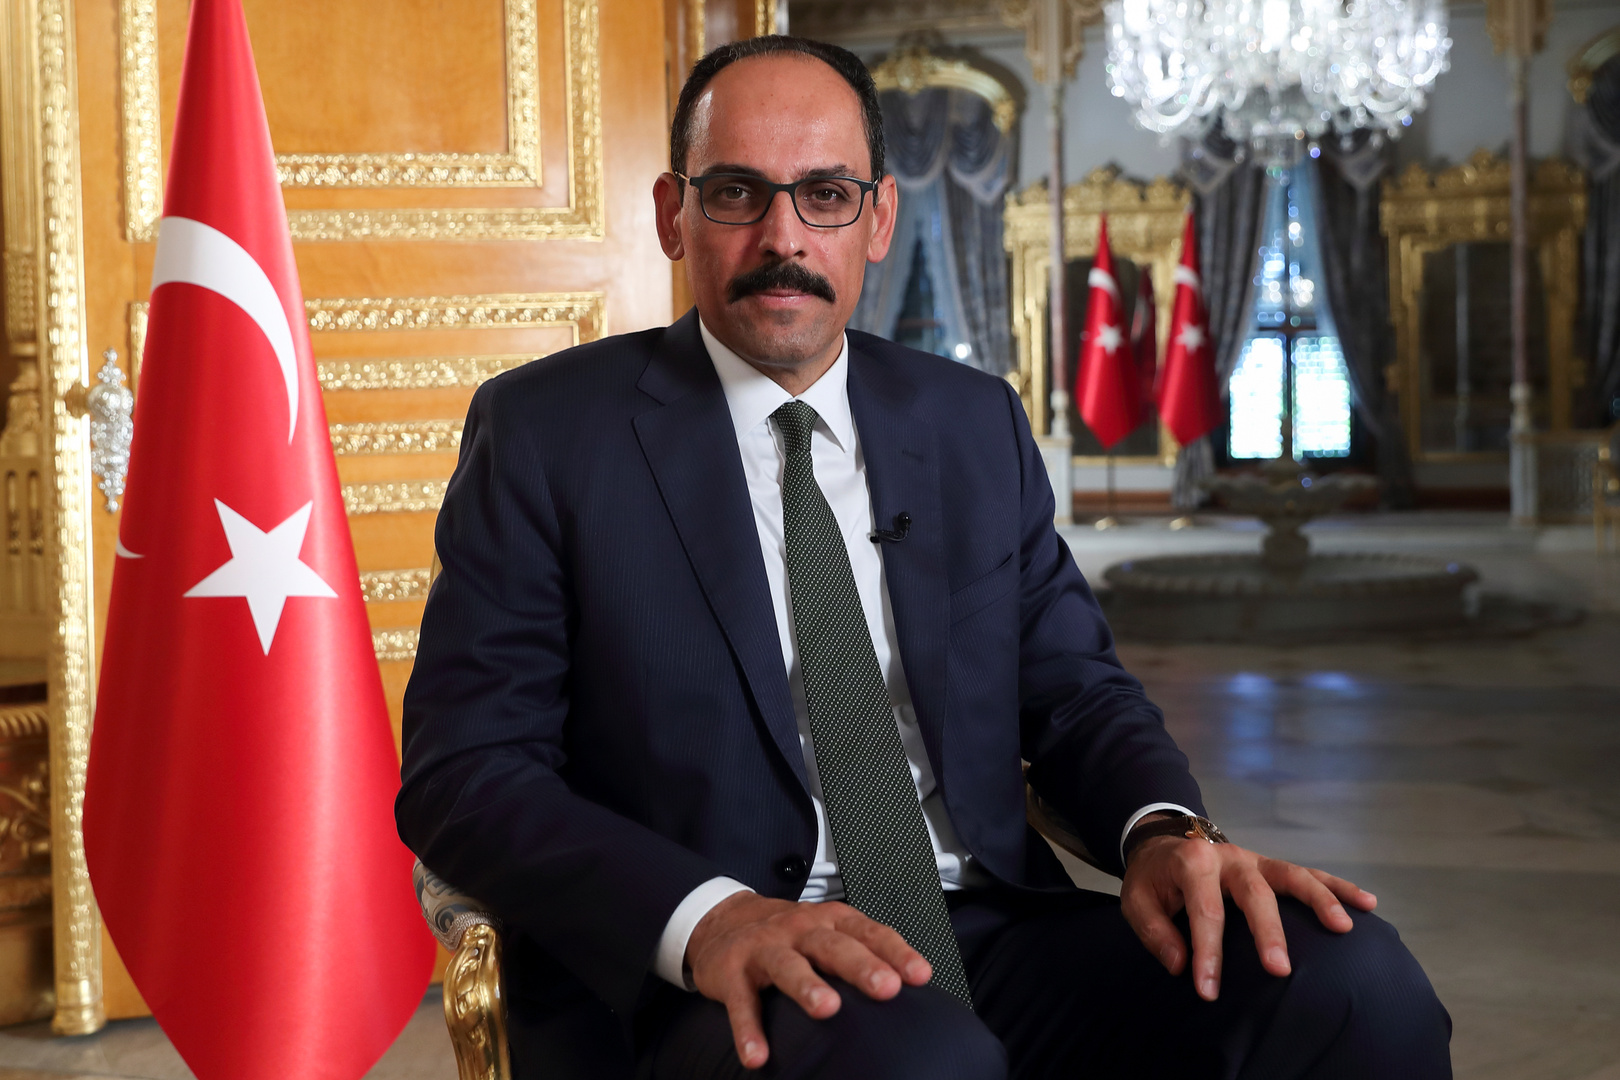 الرئاسة التركية: يمكن فتح صفحة جديدة مع مصر وعدد من دول الخليج للسلام والاستقرار